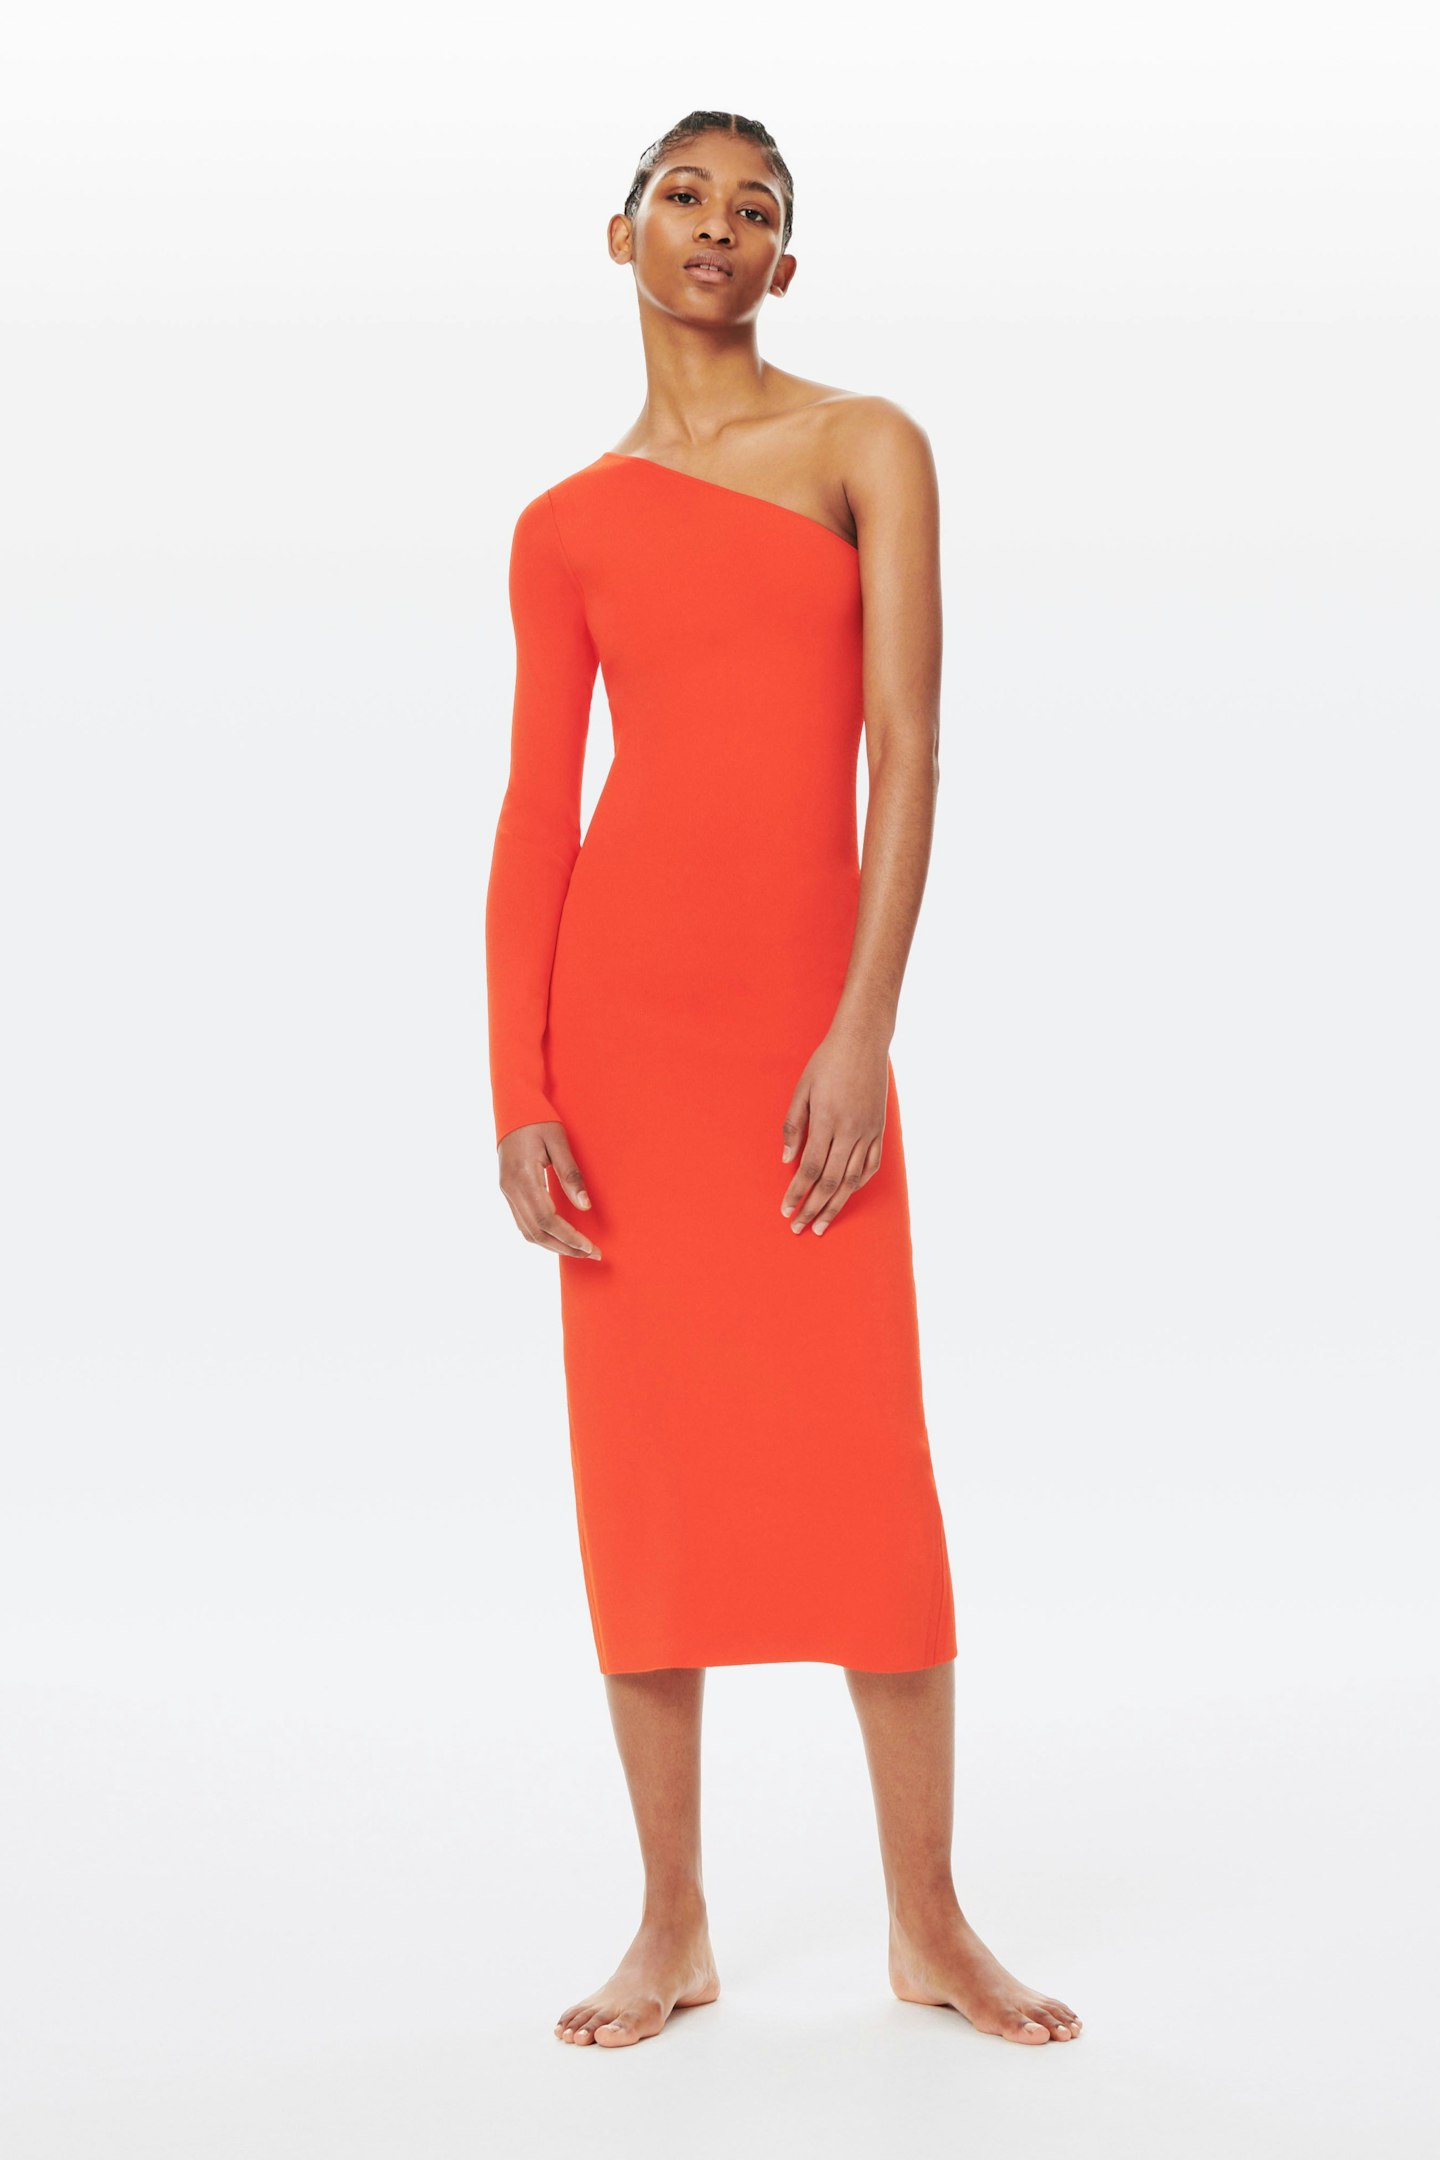 VB Body, VB Body One Shoulder Midi Dress in Red-Orange, £650